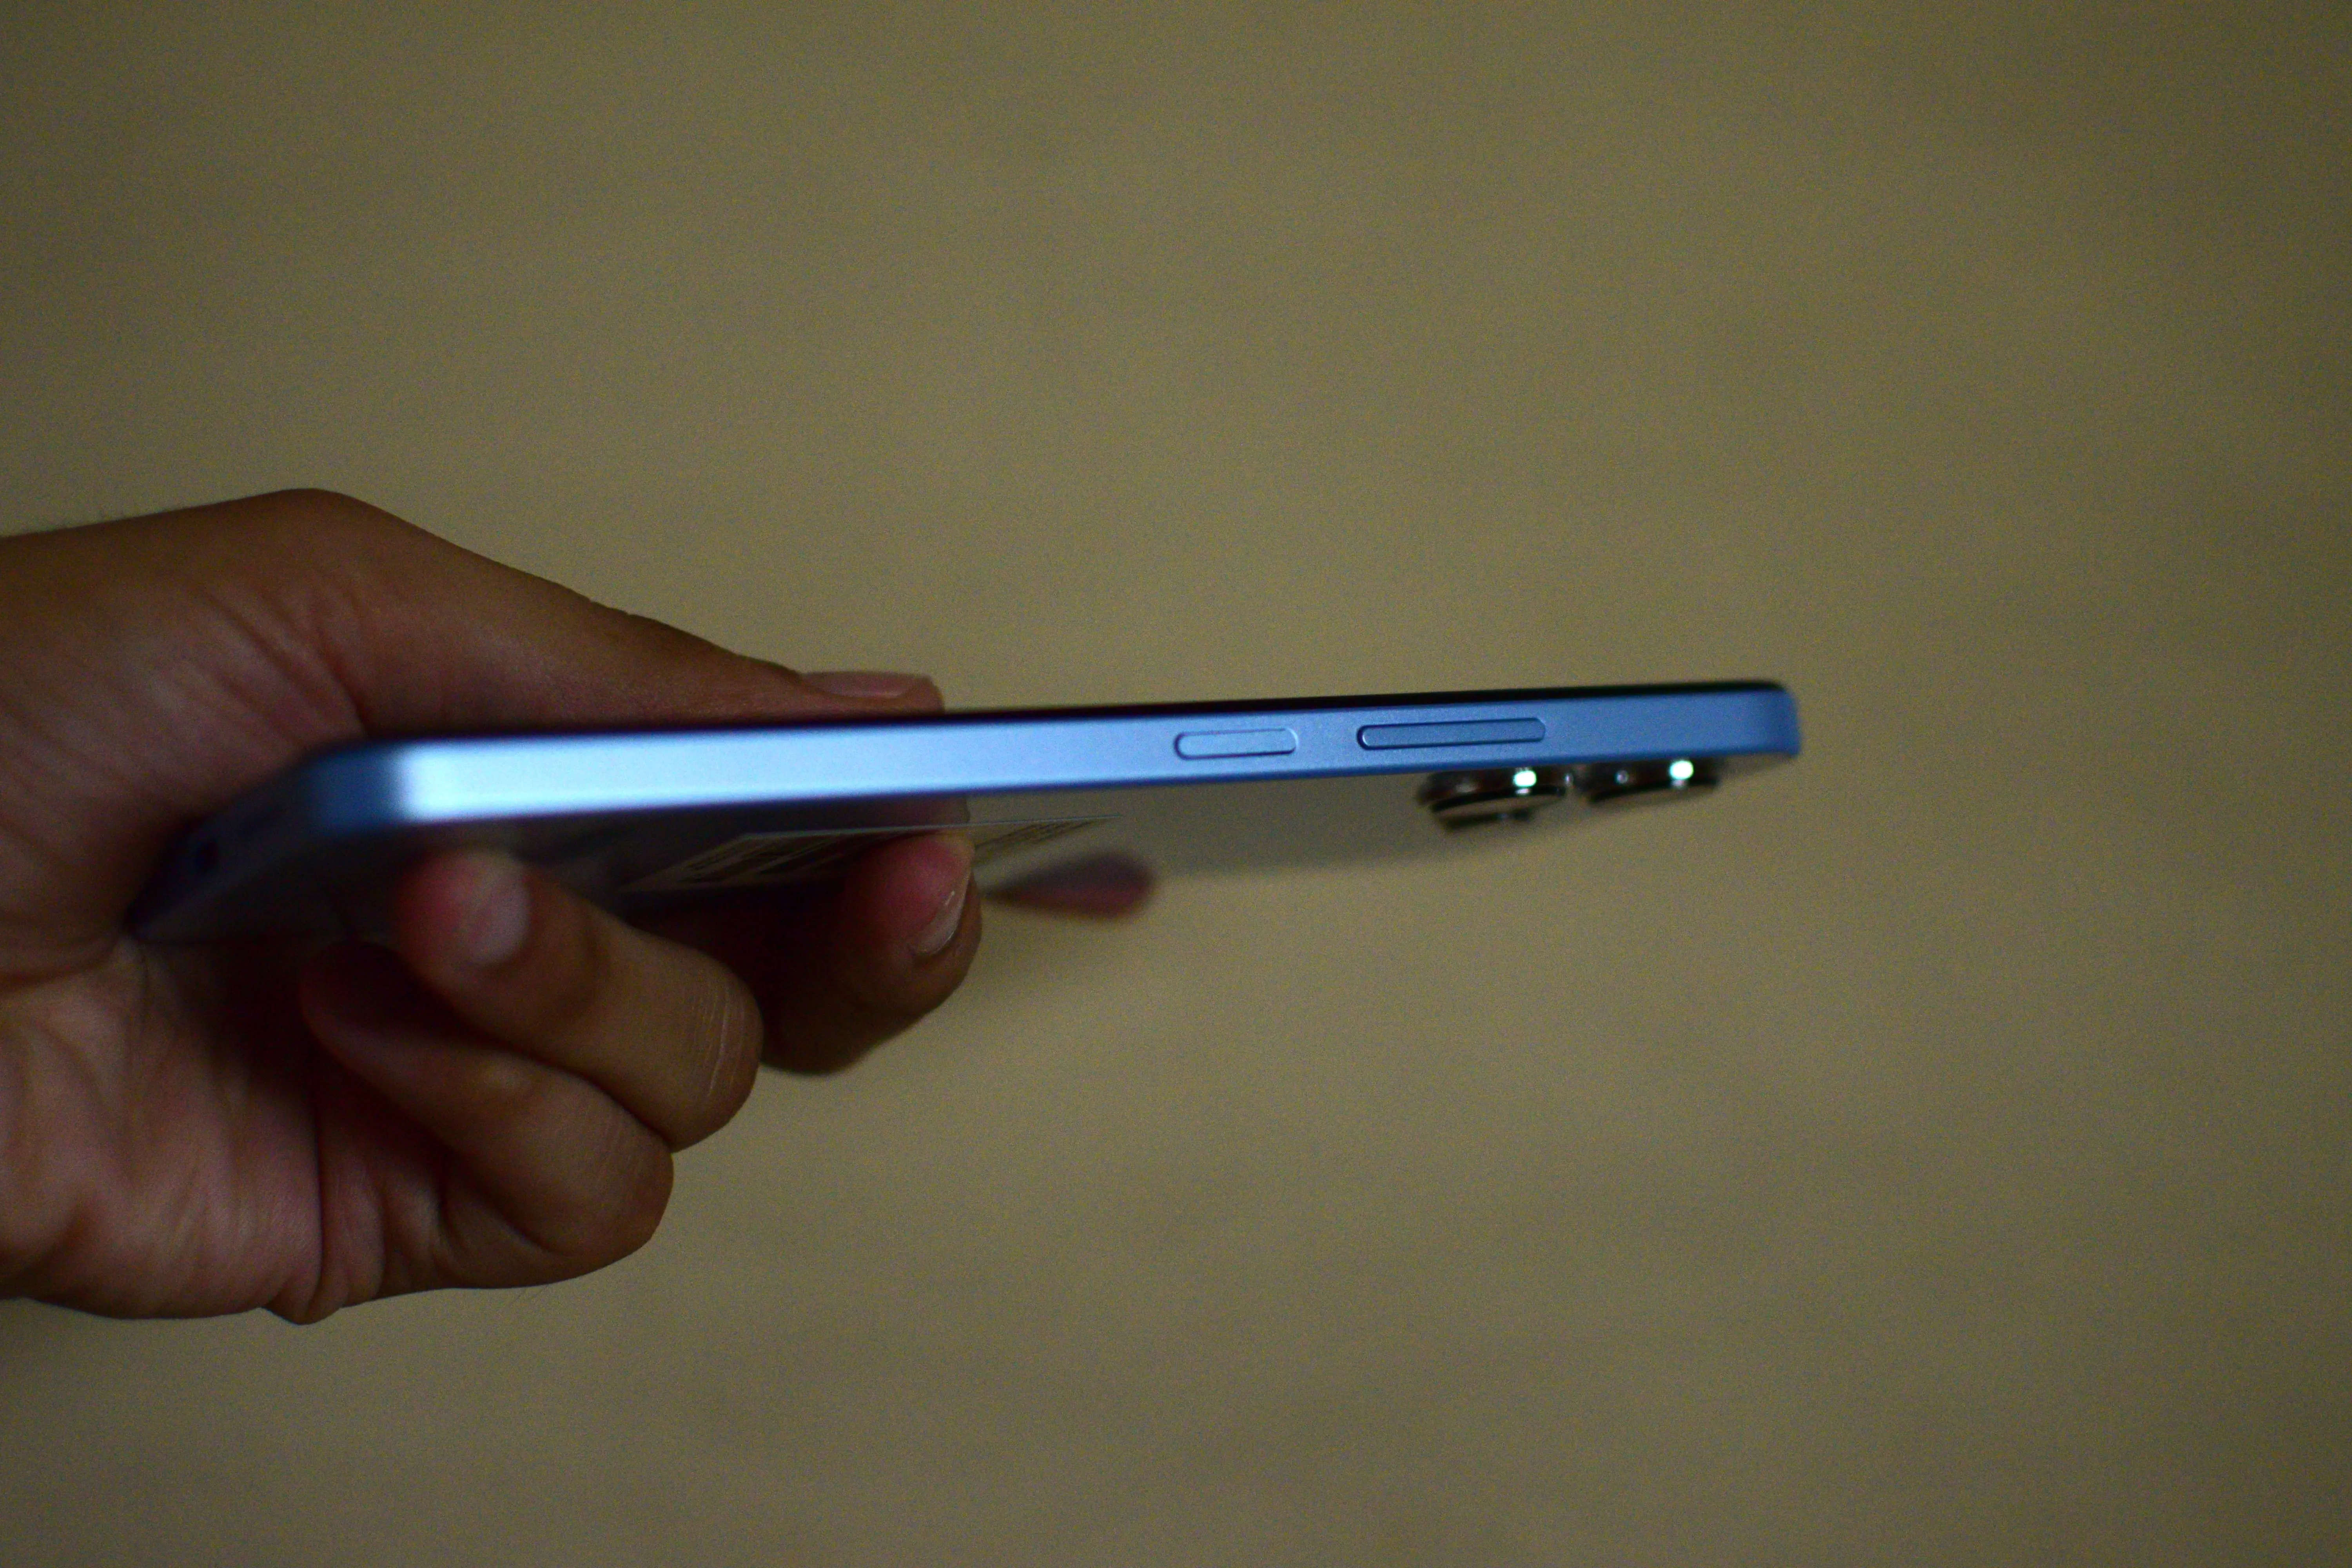 Xiaomi Redmi 12 Smartphone [6.79/8GB/256GB]